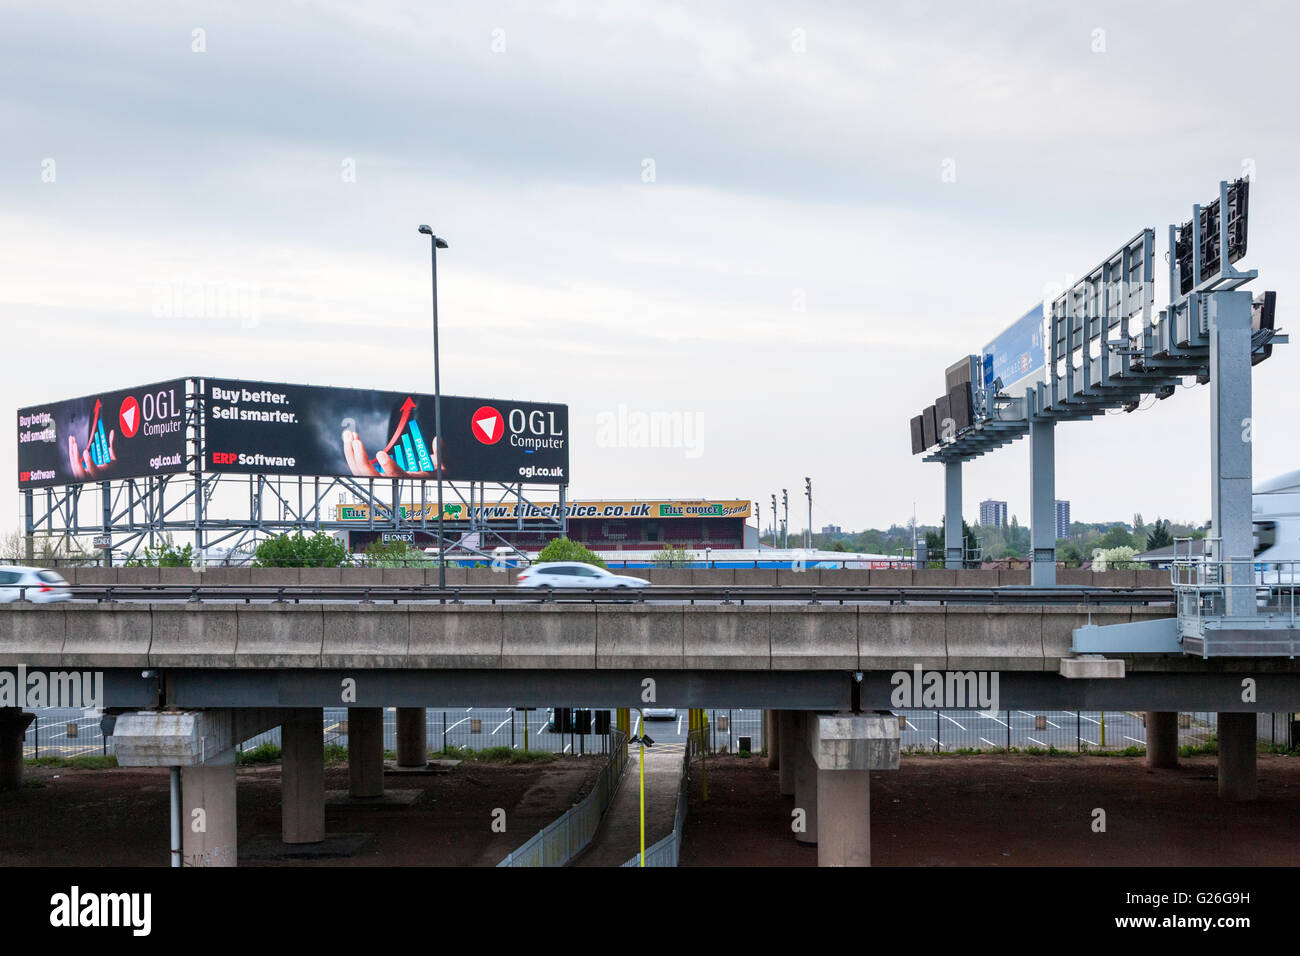 Angehobener Abschnitt der Autobahn M6 mit Gantry und hohe elektronische Werbung Anschlagtafel in der Dämmerung, Bescot, Walsall, West Midlands, England, Großbritannien Stockfoto